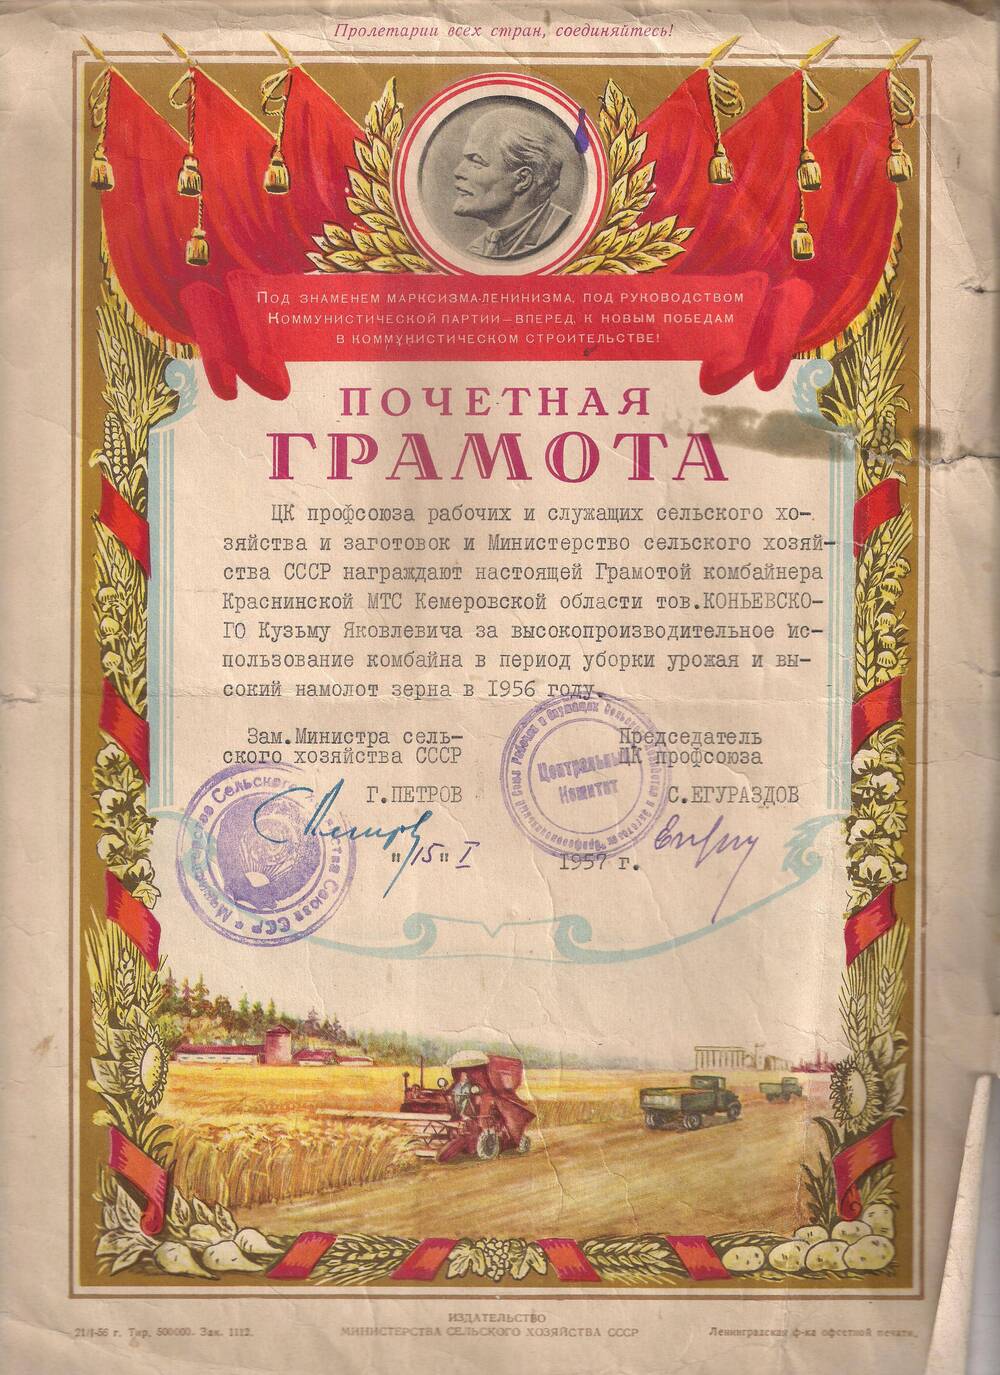 Грамота Почетная ЦК профсоюза рабочих и служащих сельского хозяйства СССР награждает Коньевского К.Я. за высокий намолот зерна